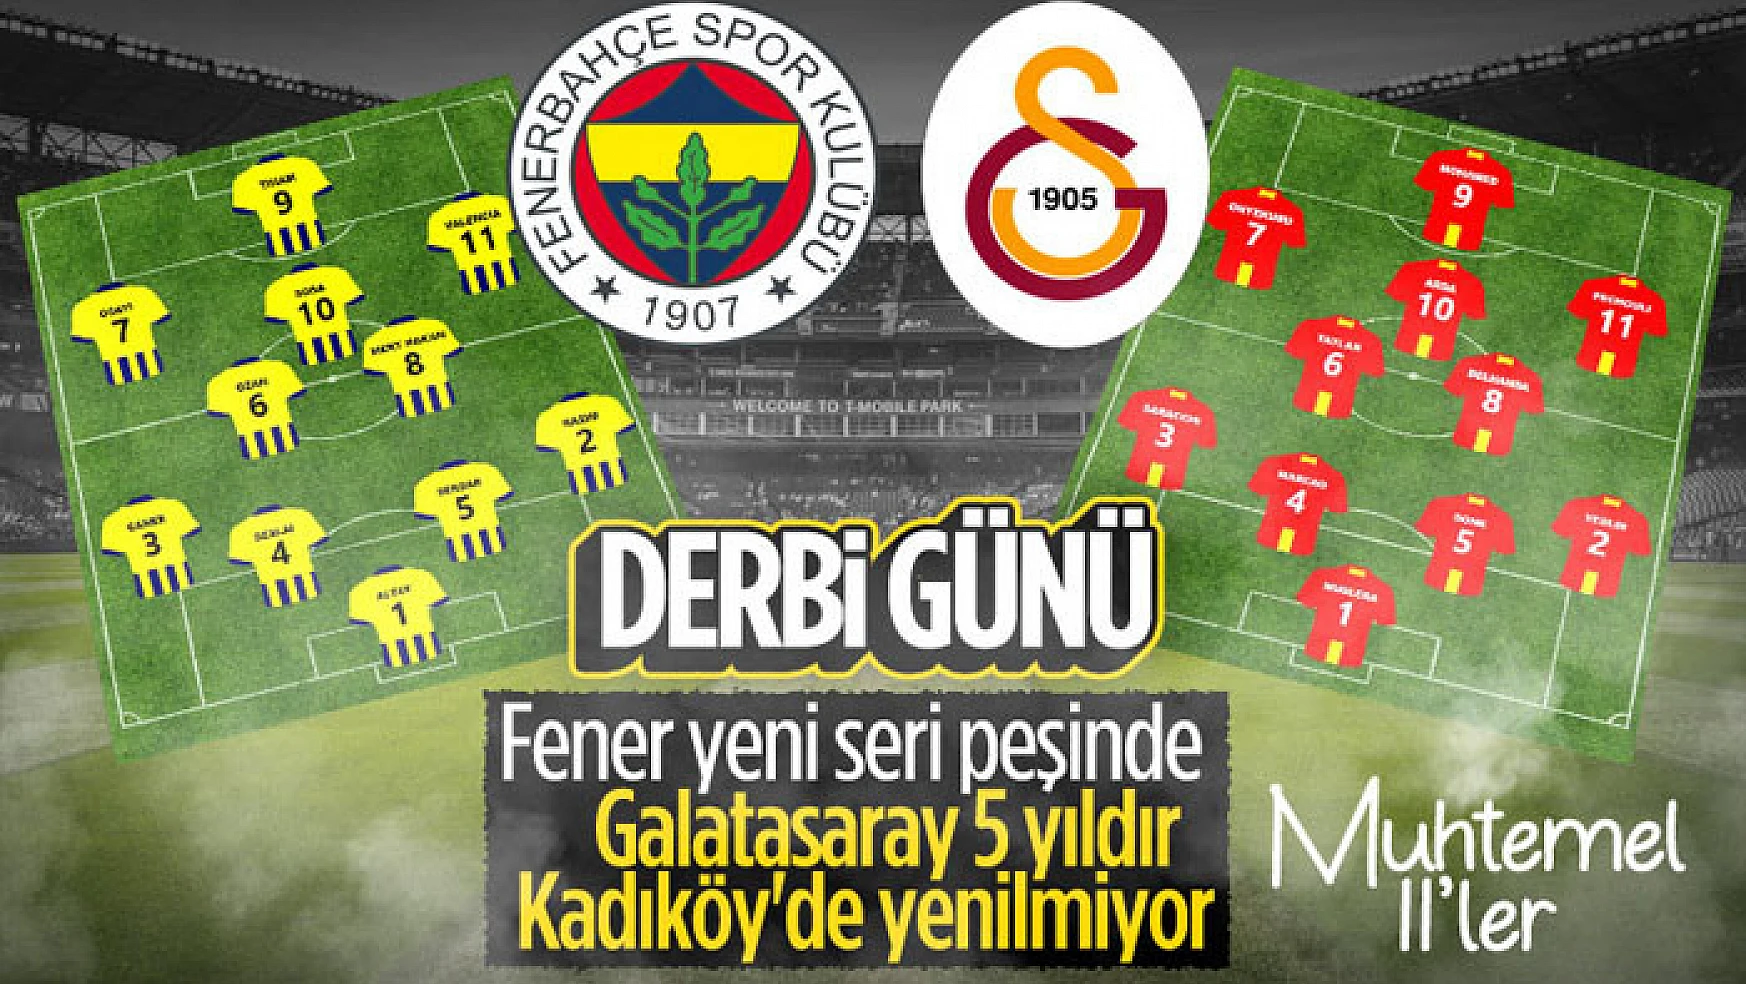 Fenerbahçe - Galatasaray derbisinin muhtemel 11'leri